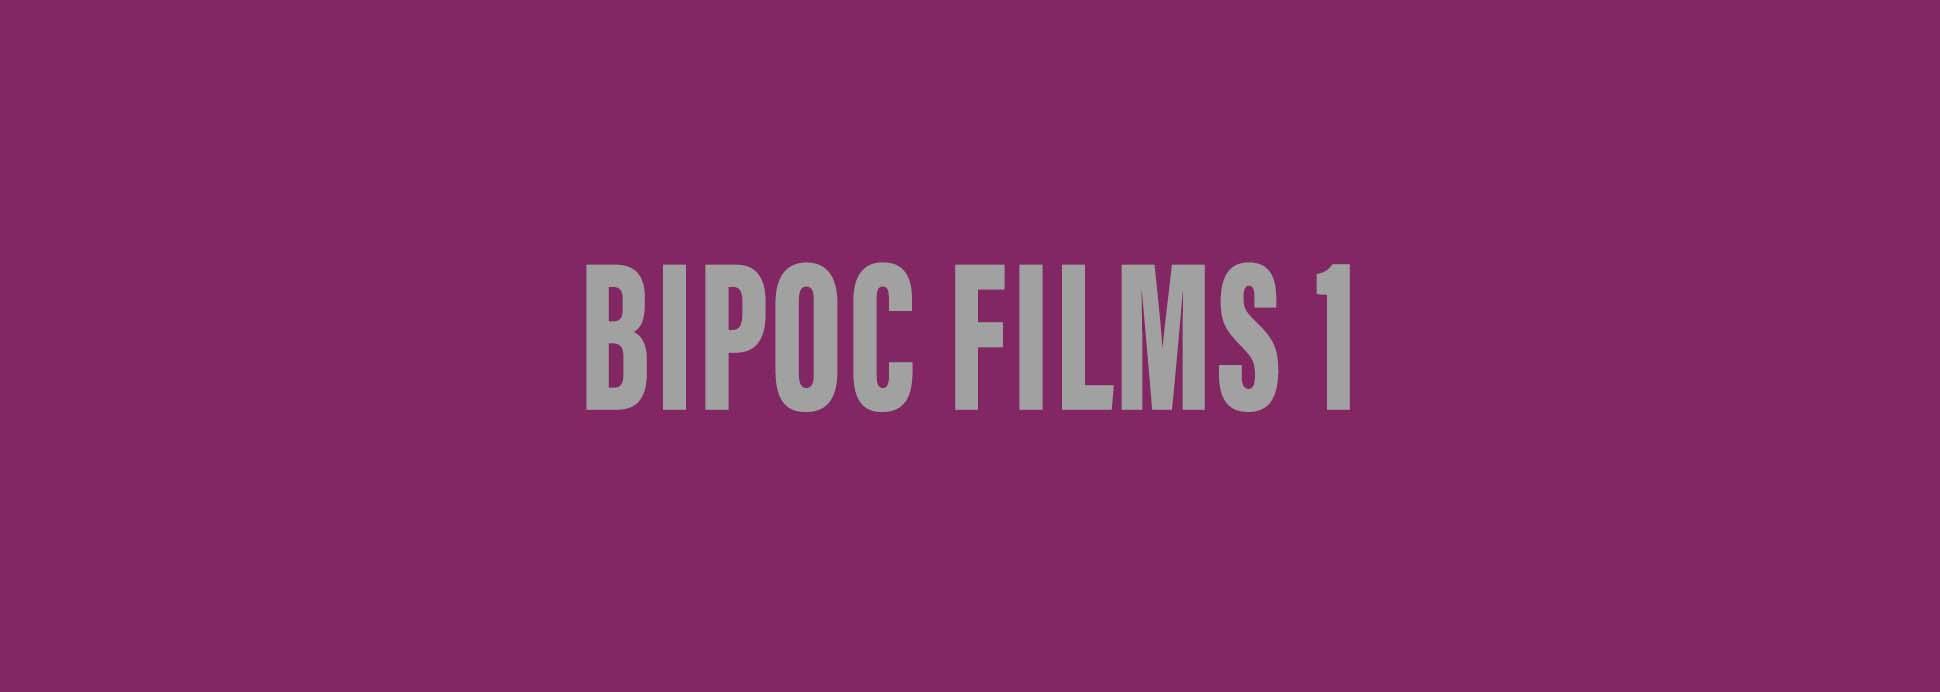 BIPOC Films 1